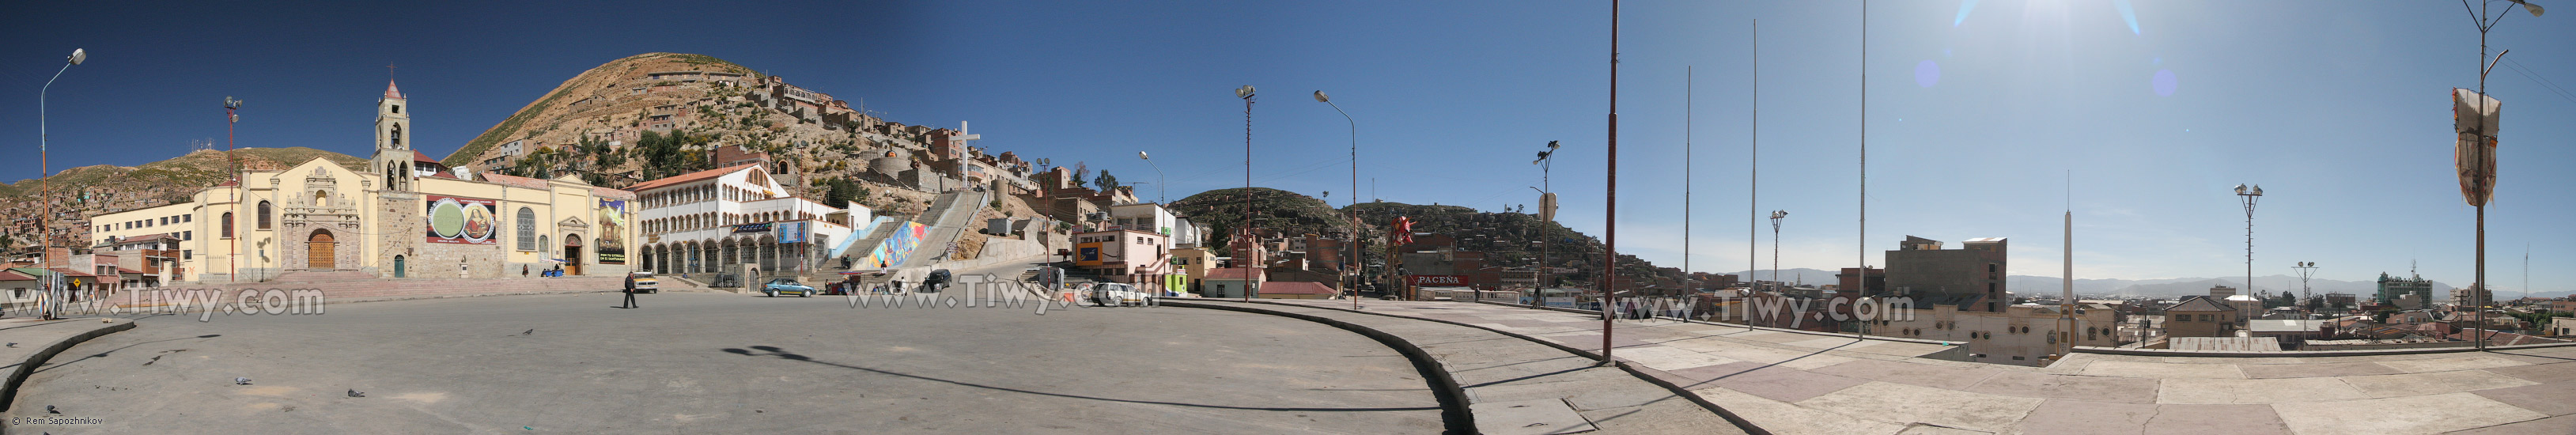 La Plaza del Folclore y el Santuario de la Virgen del Socavón